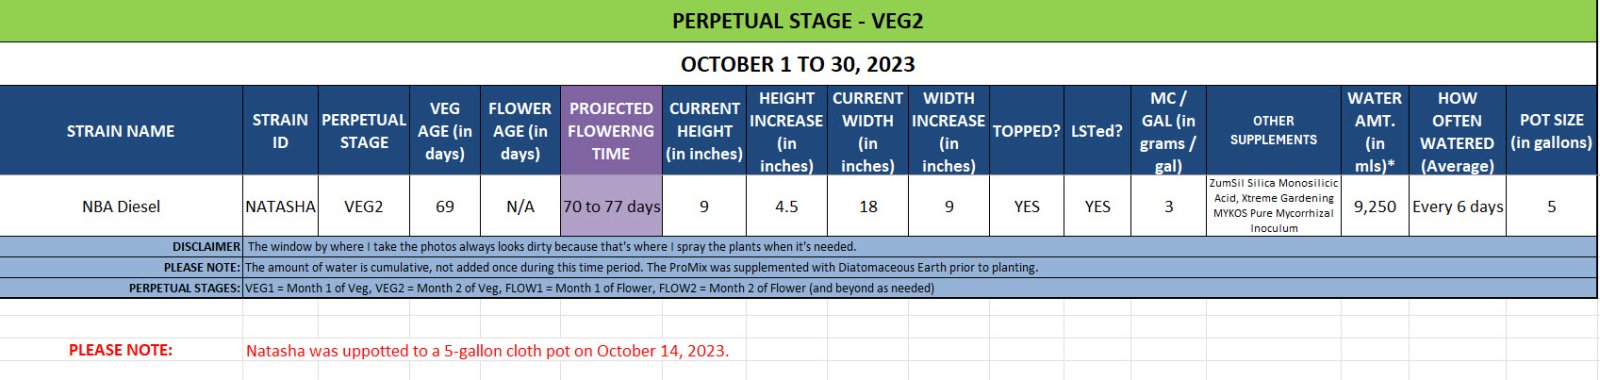 420 Update for Natasha - October 1 to 30, 2023.jpg